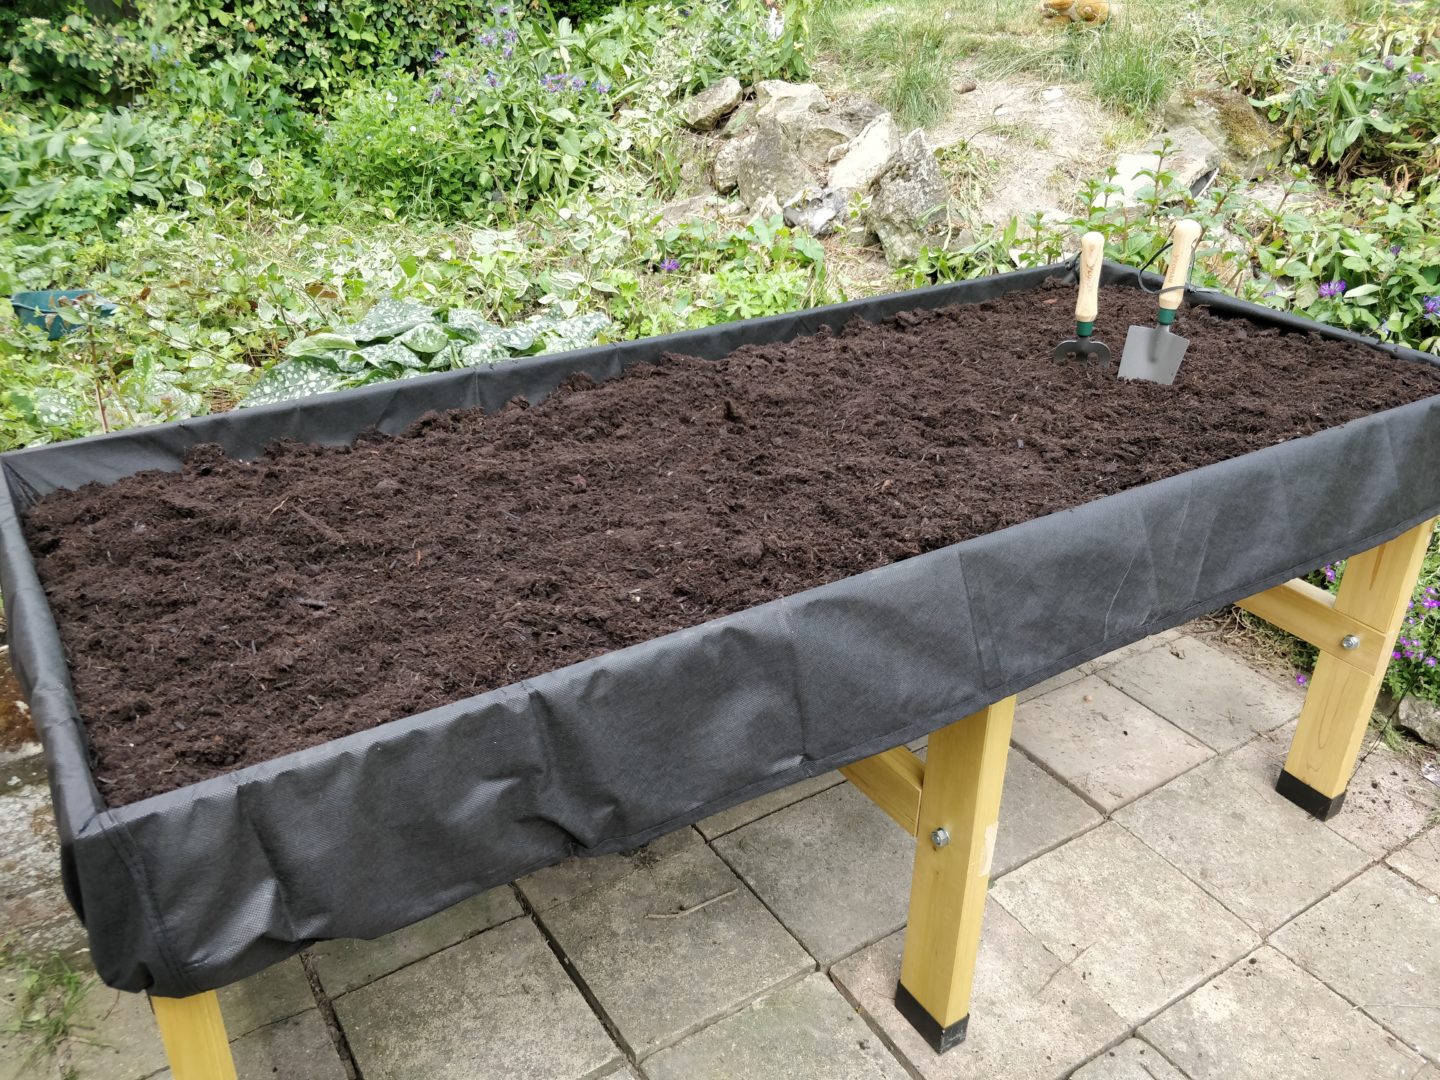 The vegtrug full of soil